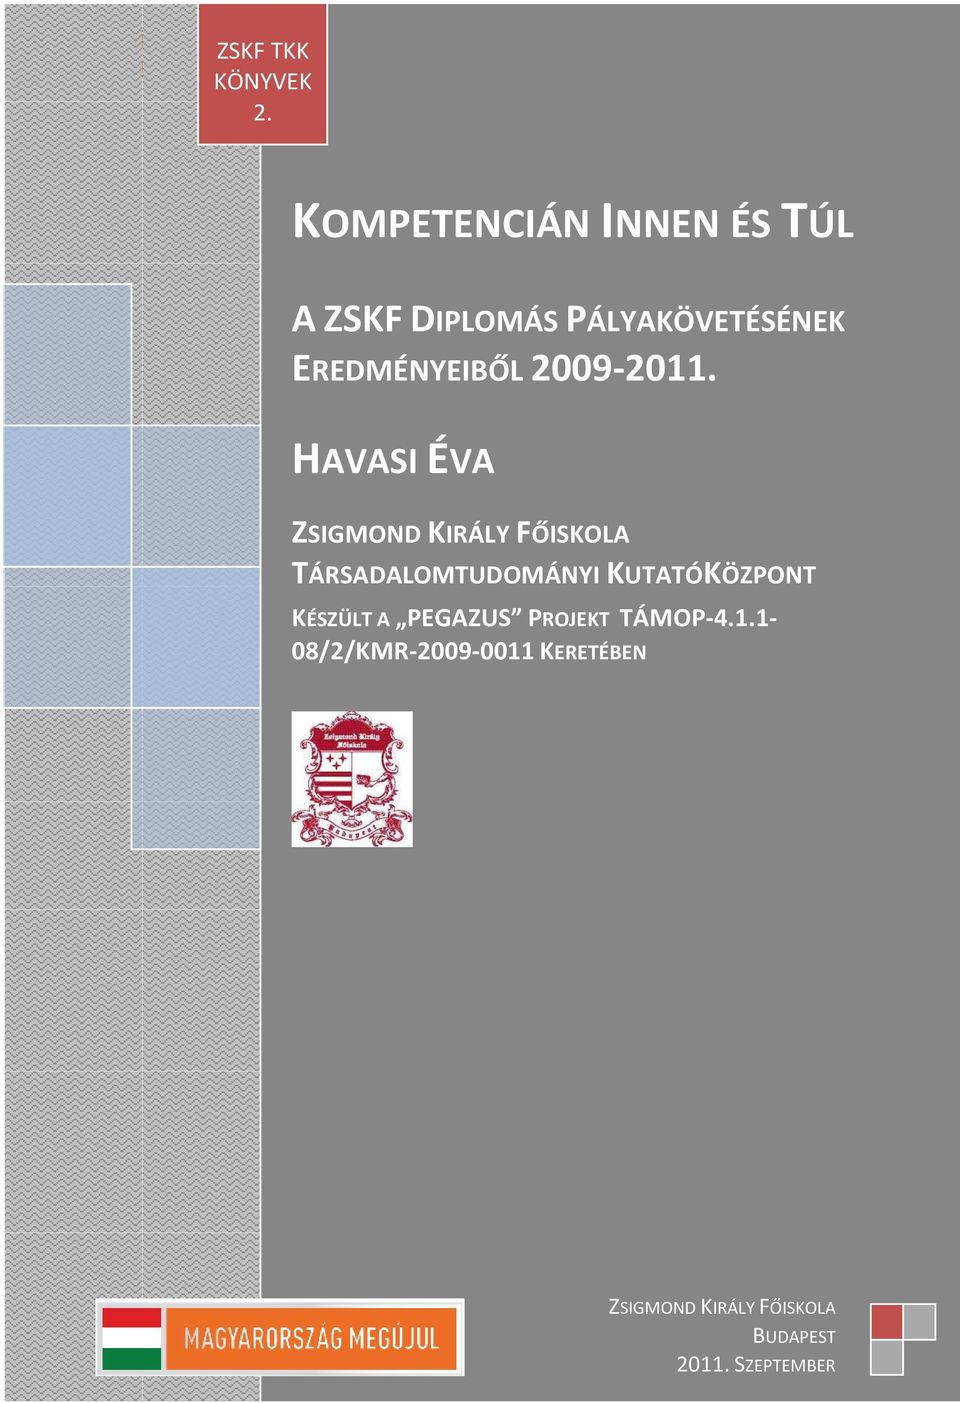 KOMPETENCIÁN INNEN ÉS TÚL A ZSKF DIPLOMÁS PÁLYAKÖVETÉSÉNEK EREDMÉNYEIBŐL 2009-2011.